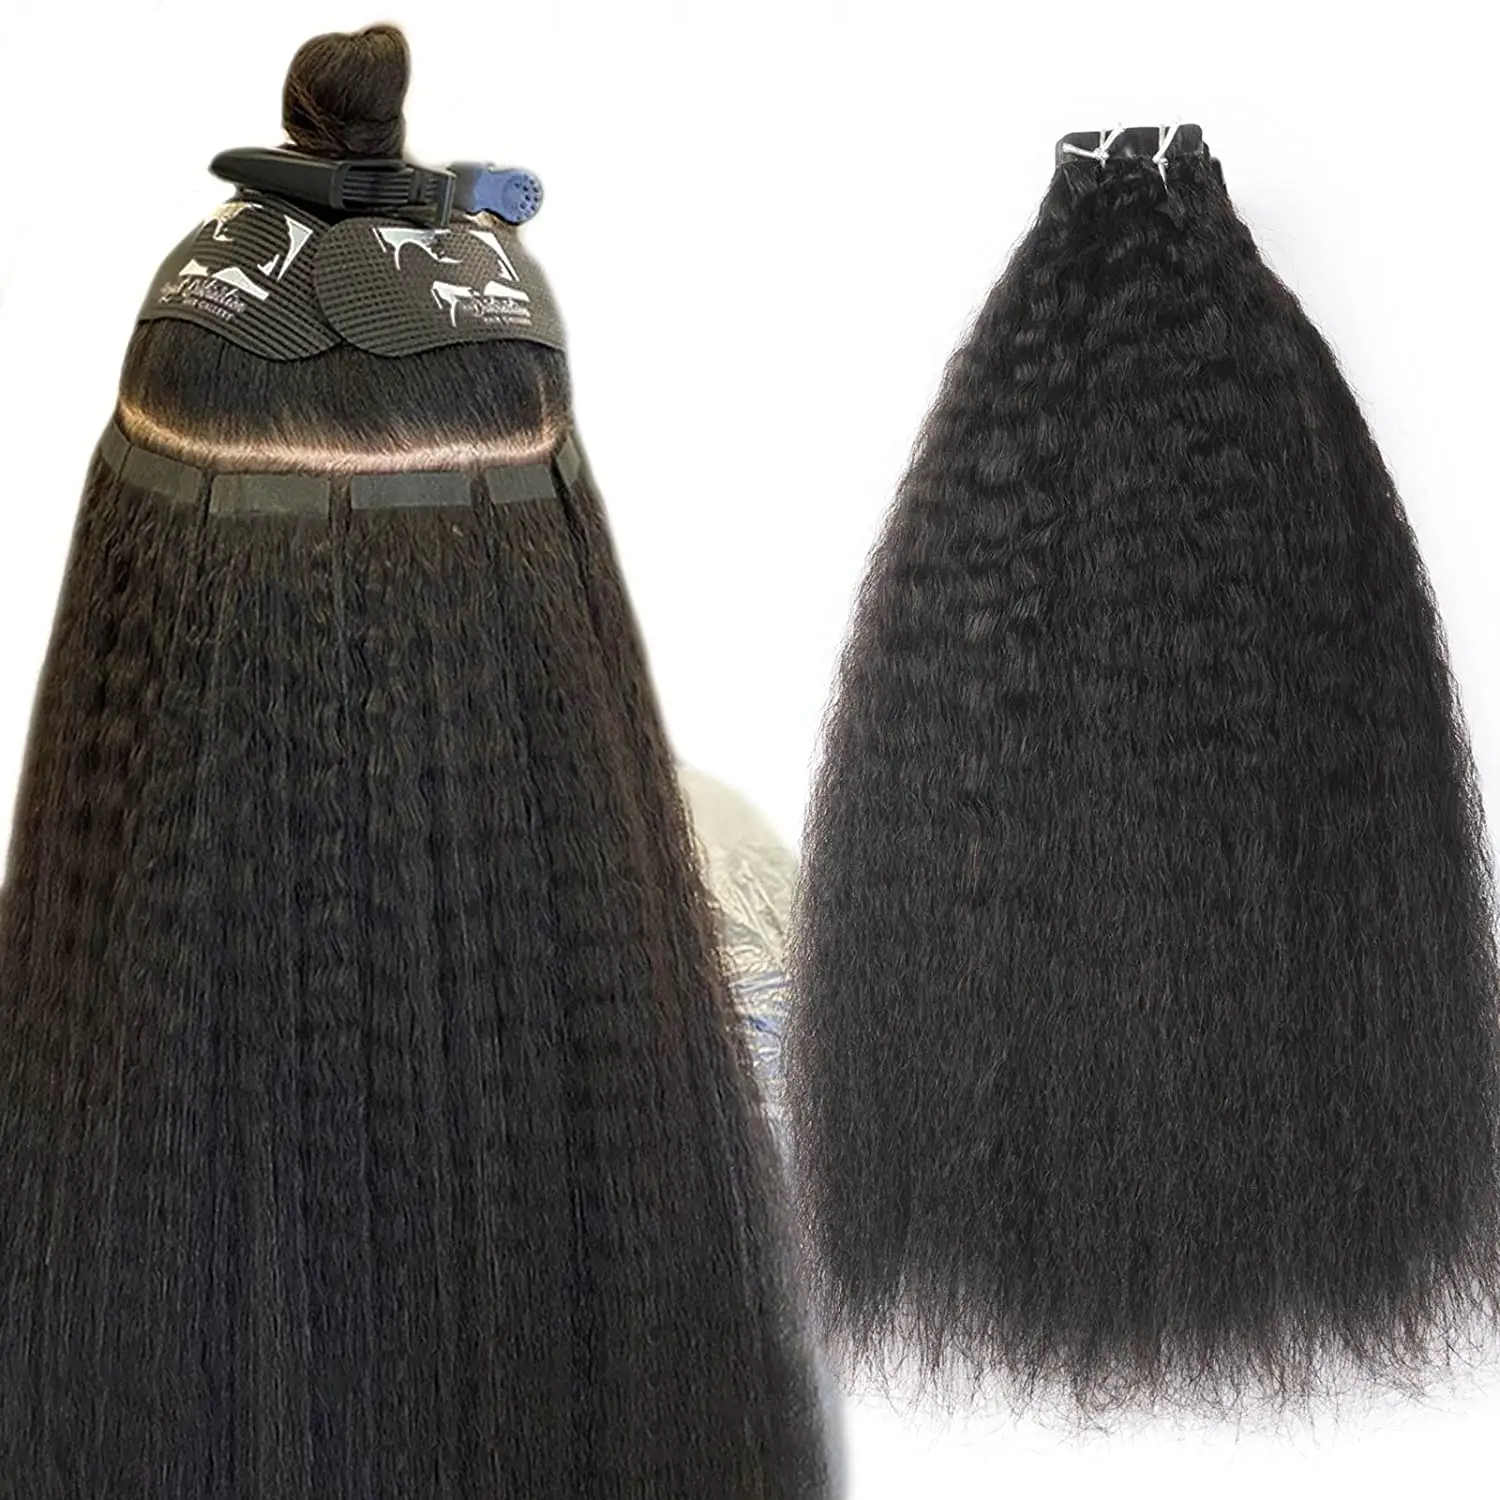 En gros Brésilien Bouclés Bande Ins Extensions de Cheveux 100 cheveux humains Afro Crépus Droite Bande Brut 100% Vierge Extension de Cheveux